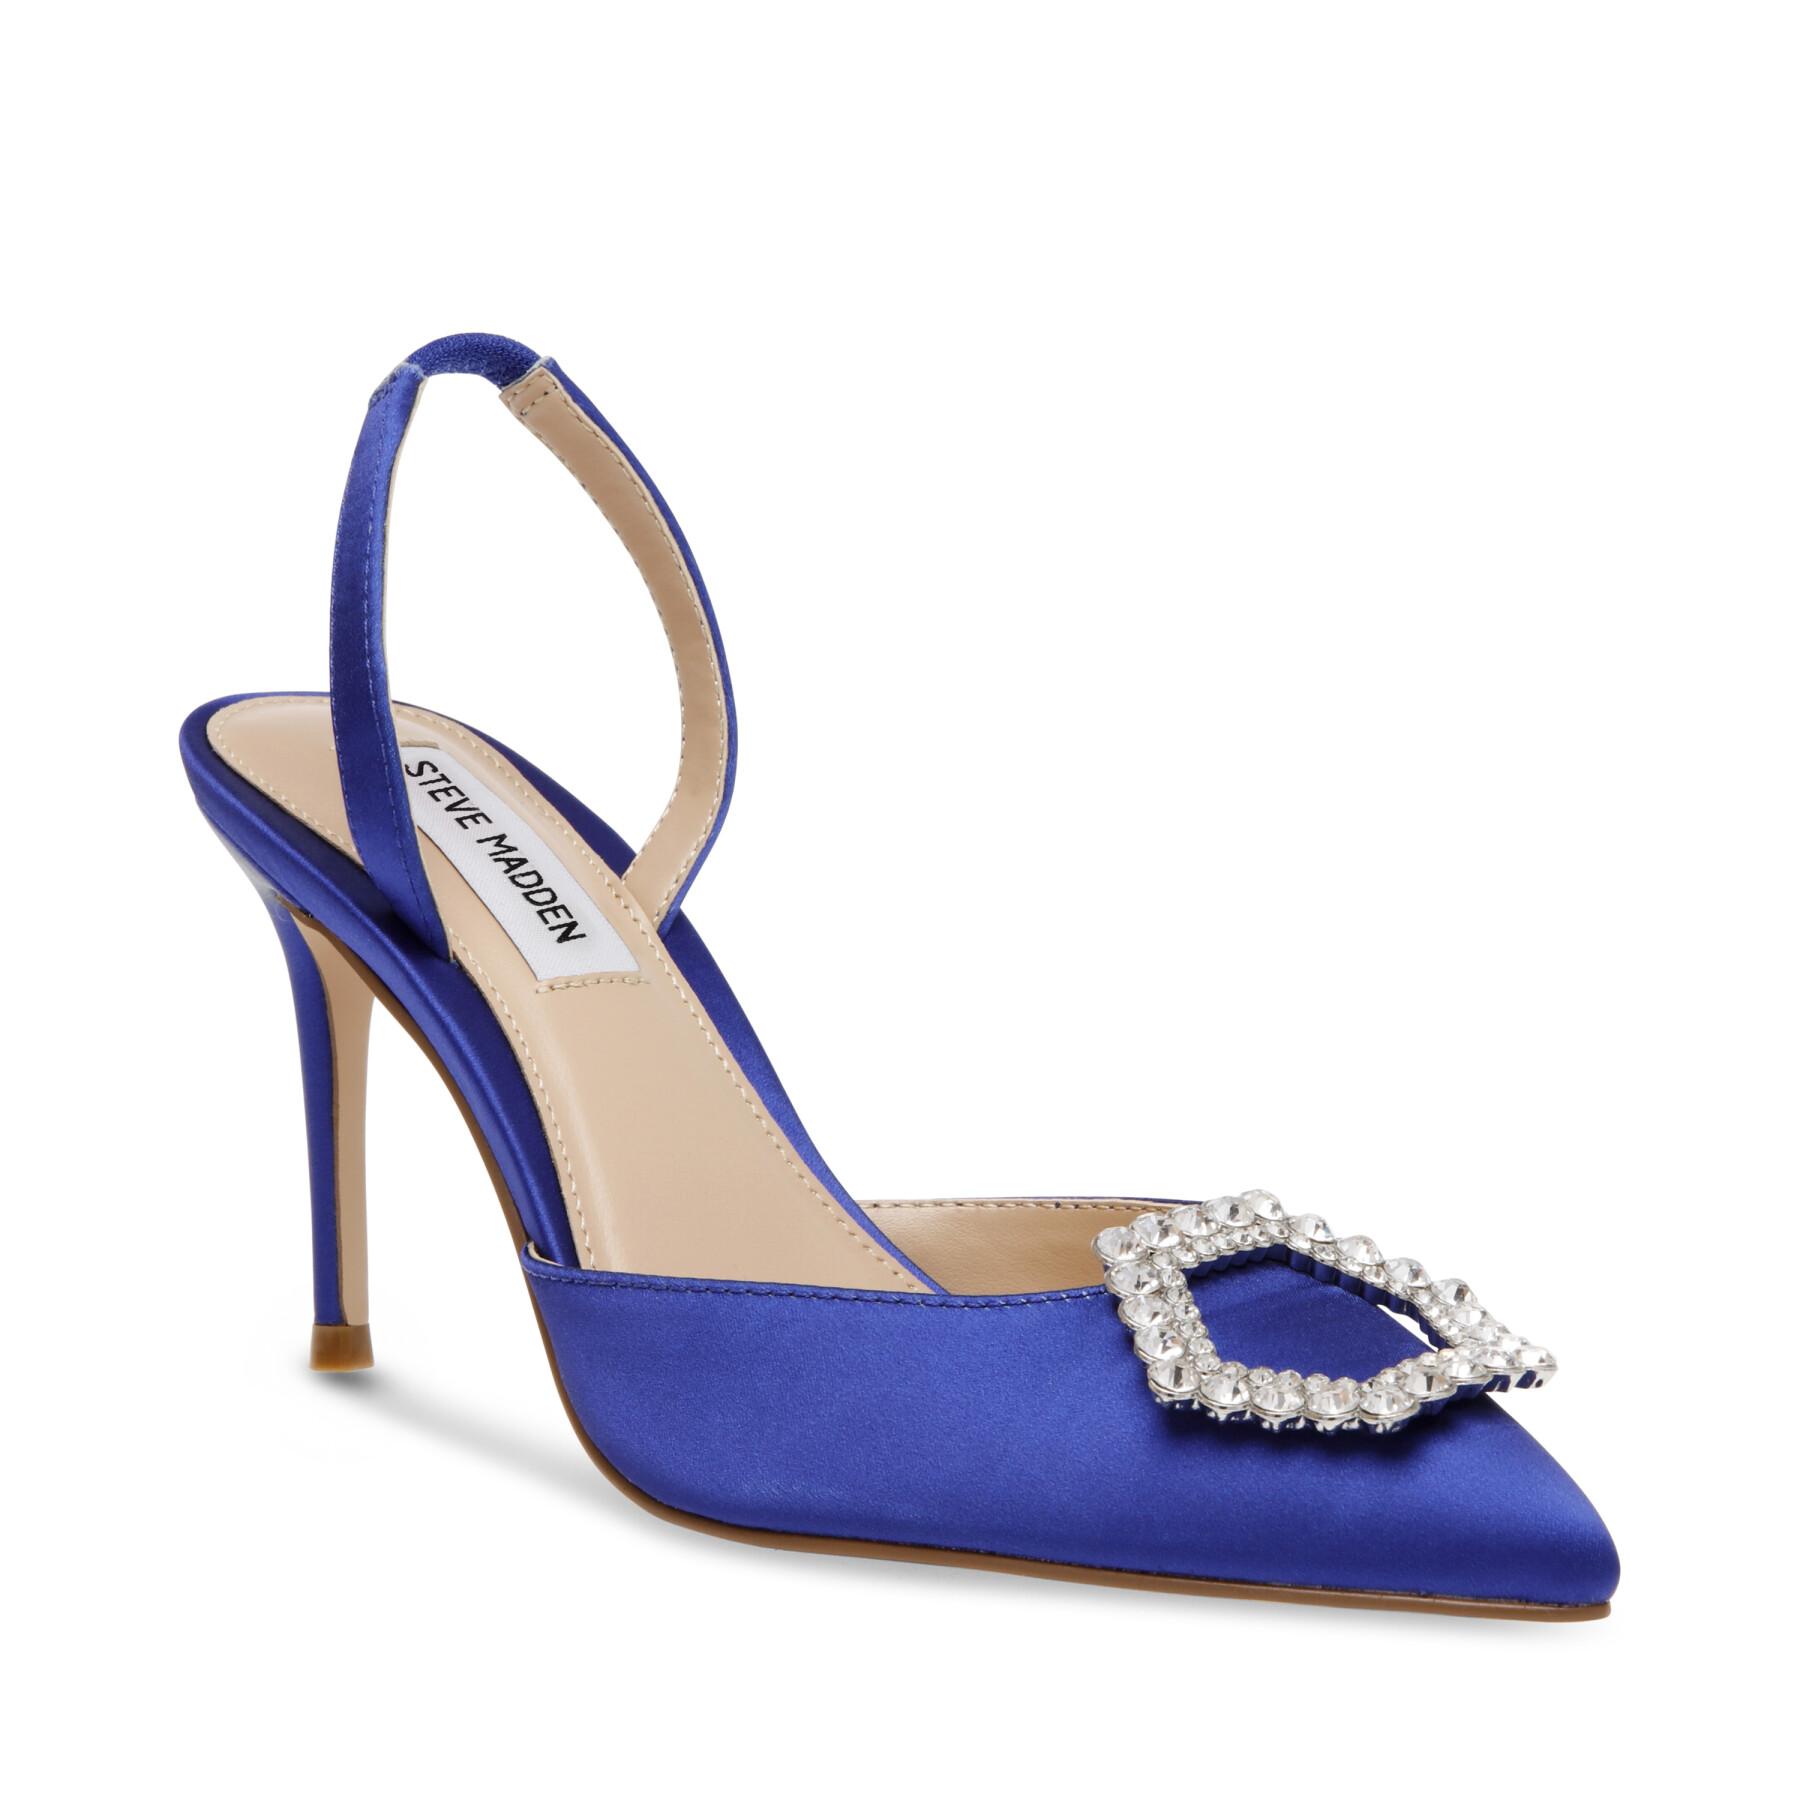 Women's heels Steve Madden Lucent